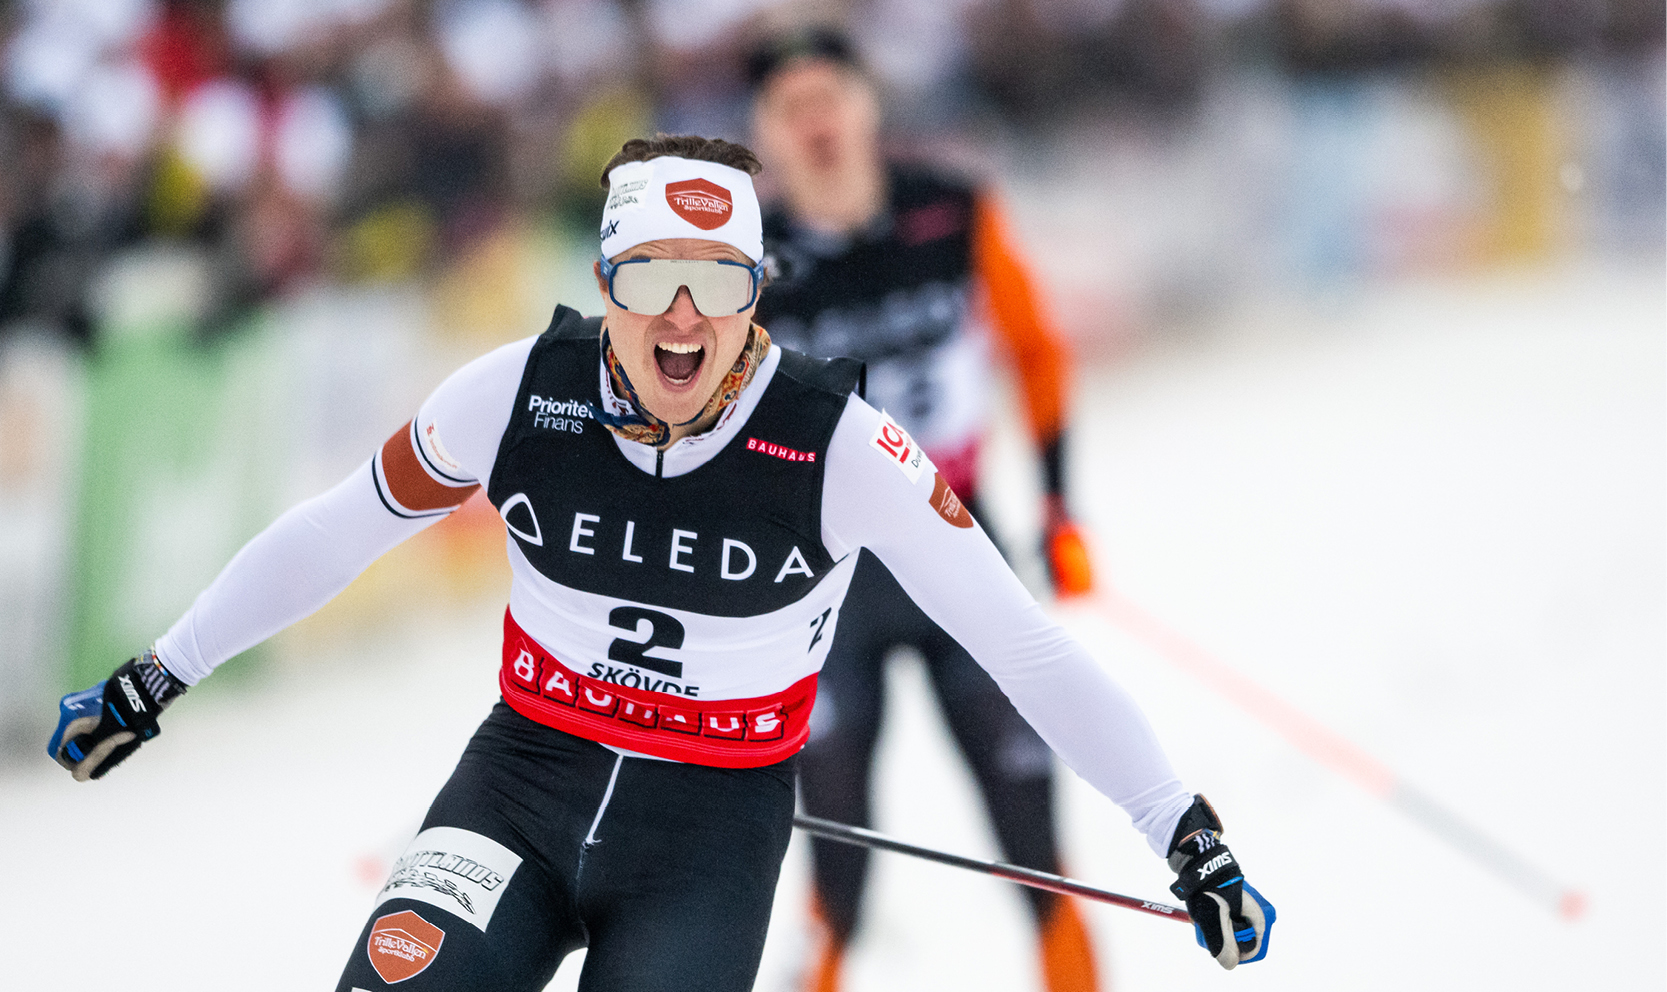 Olle Jonsson från Trillevallens SK blev svensk mästare i sprint.